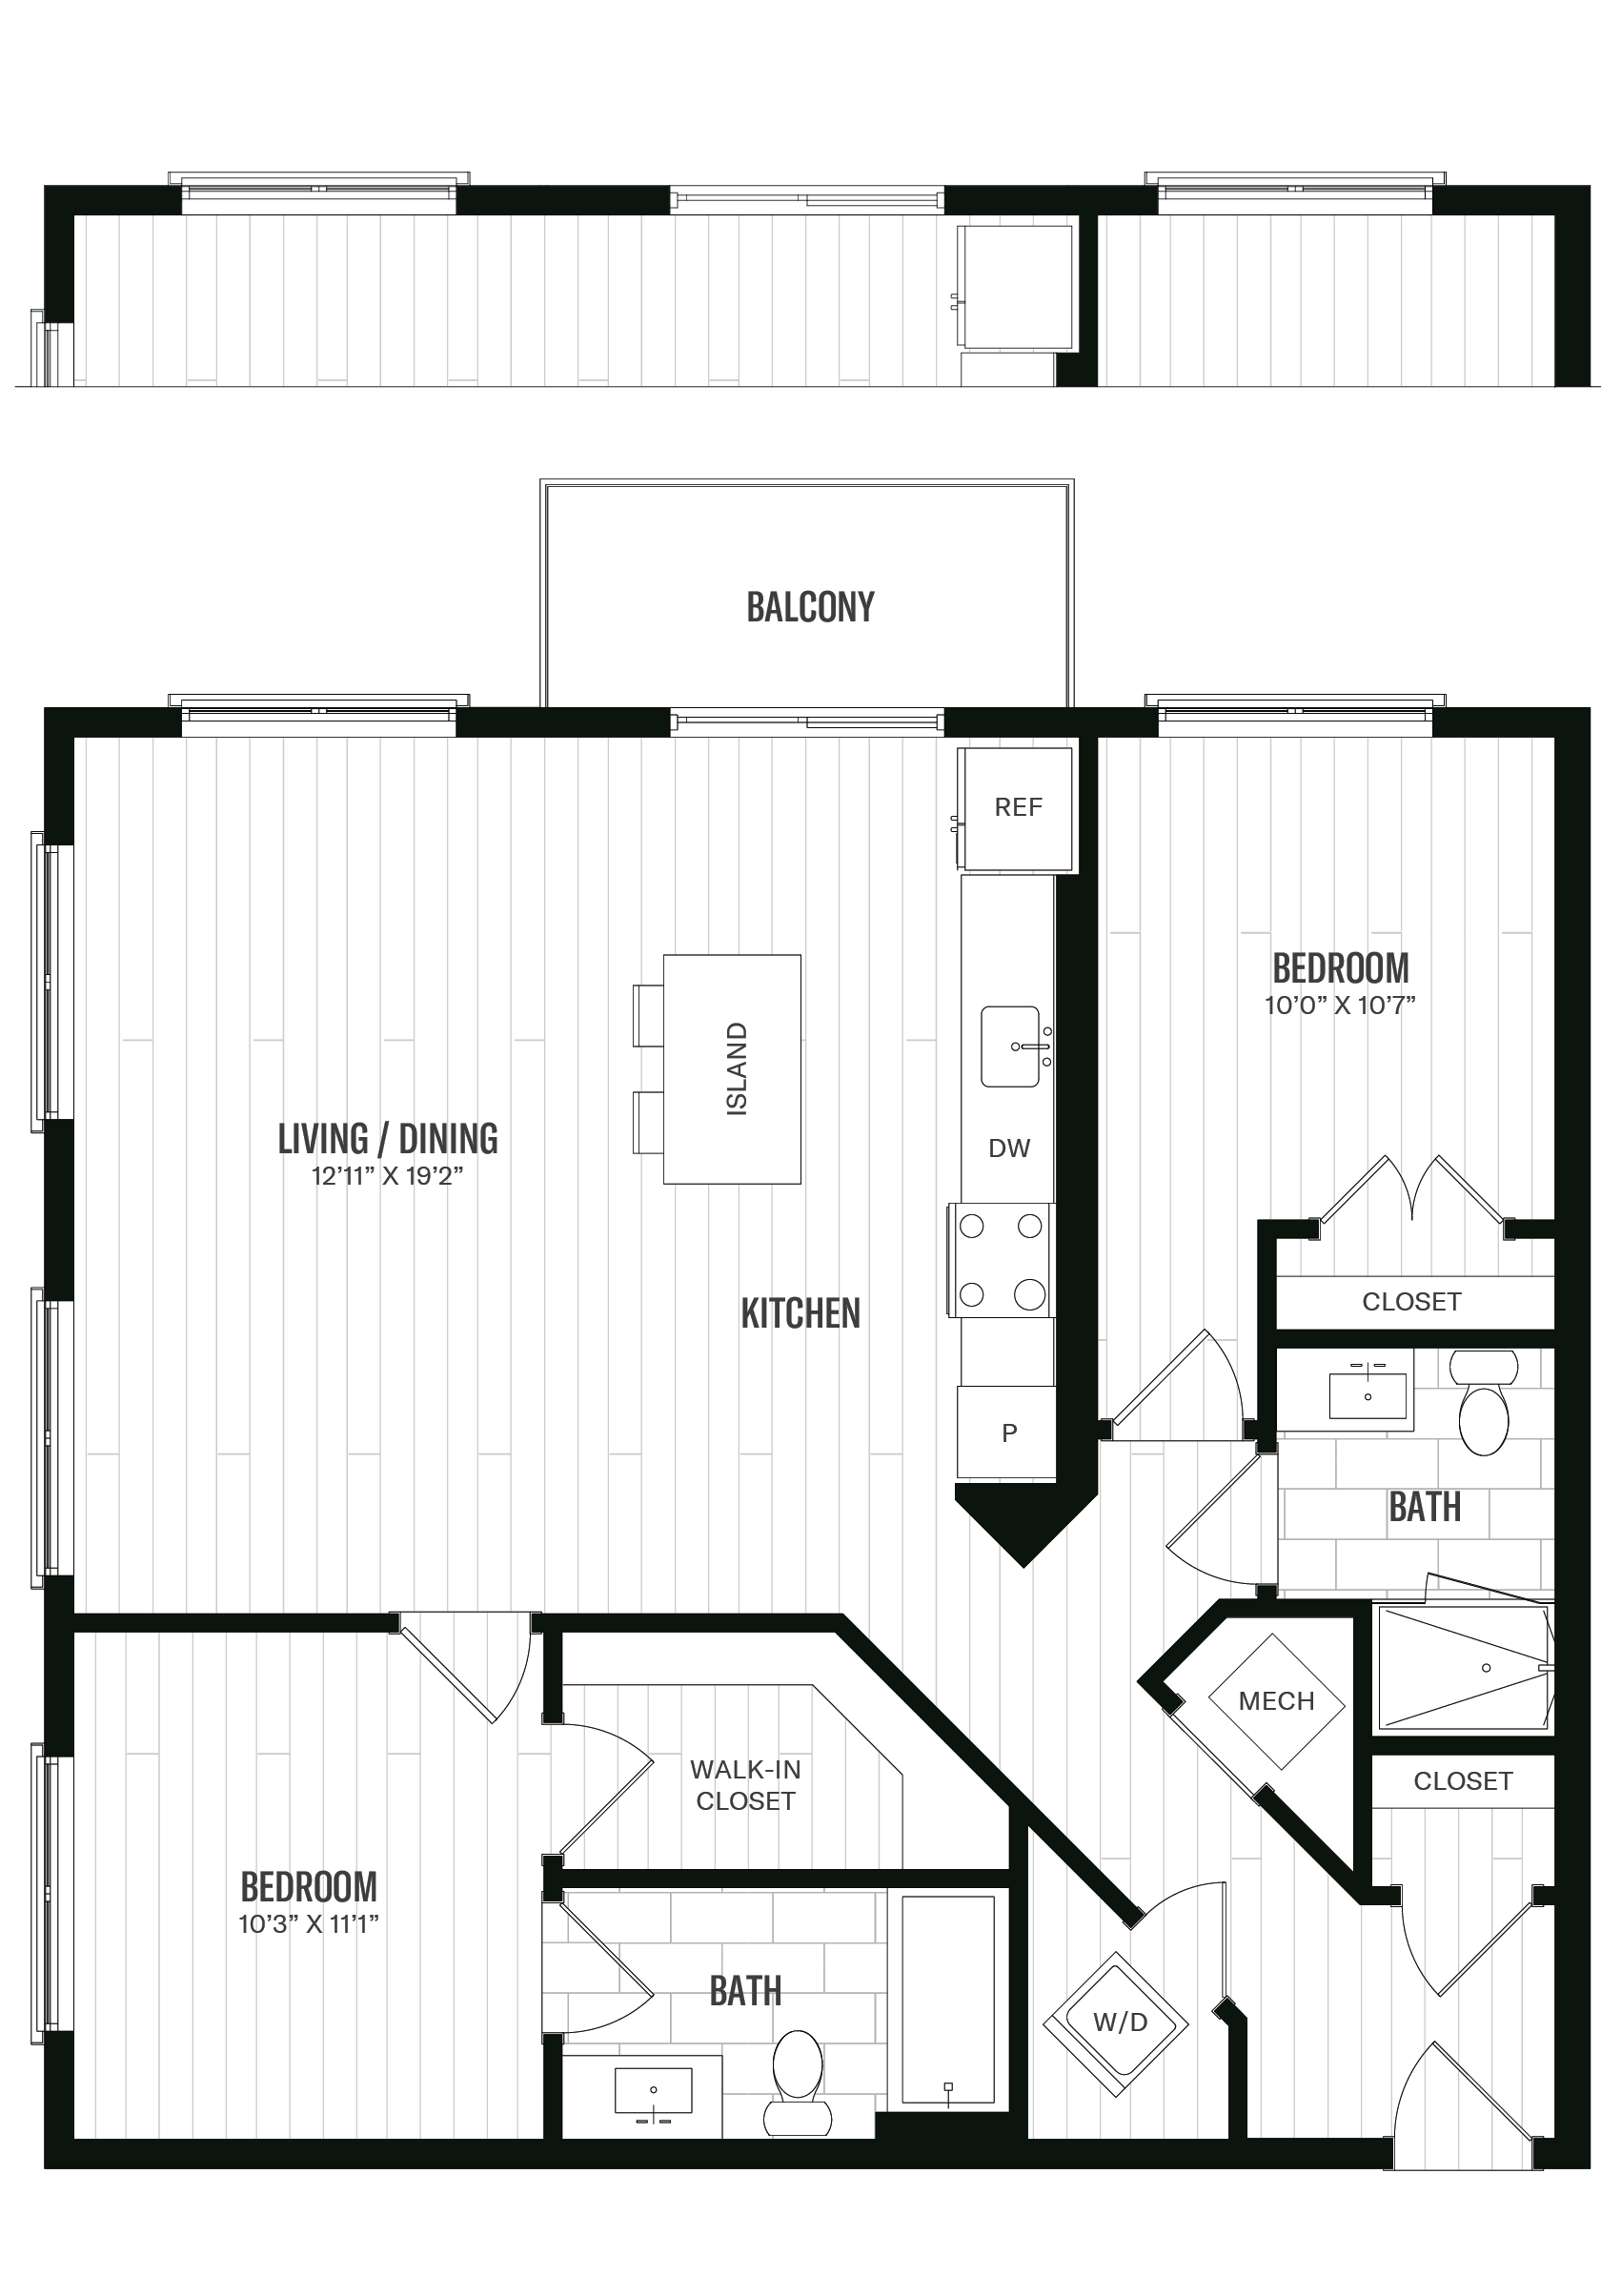 Floorplan image of unit 235